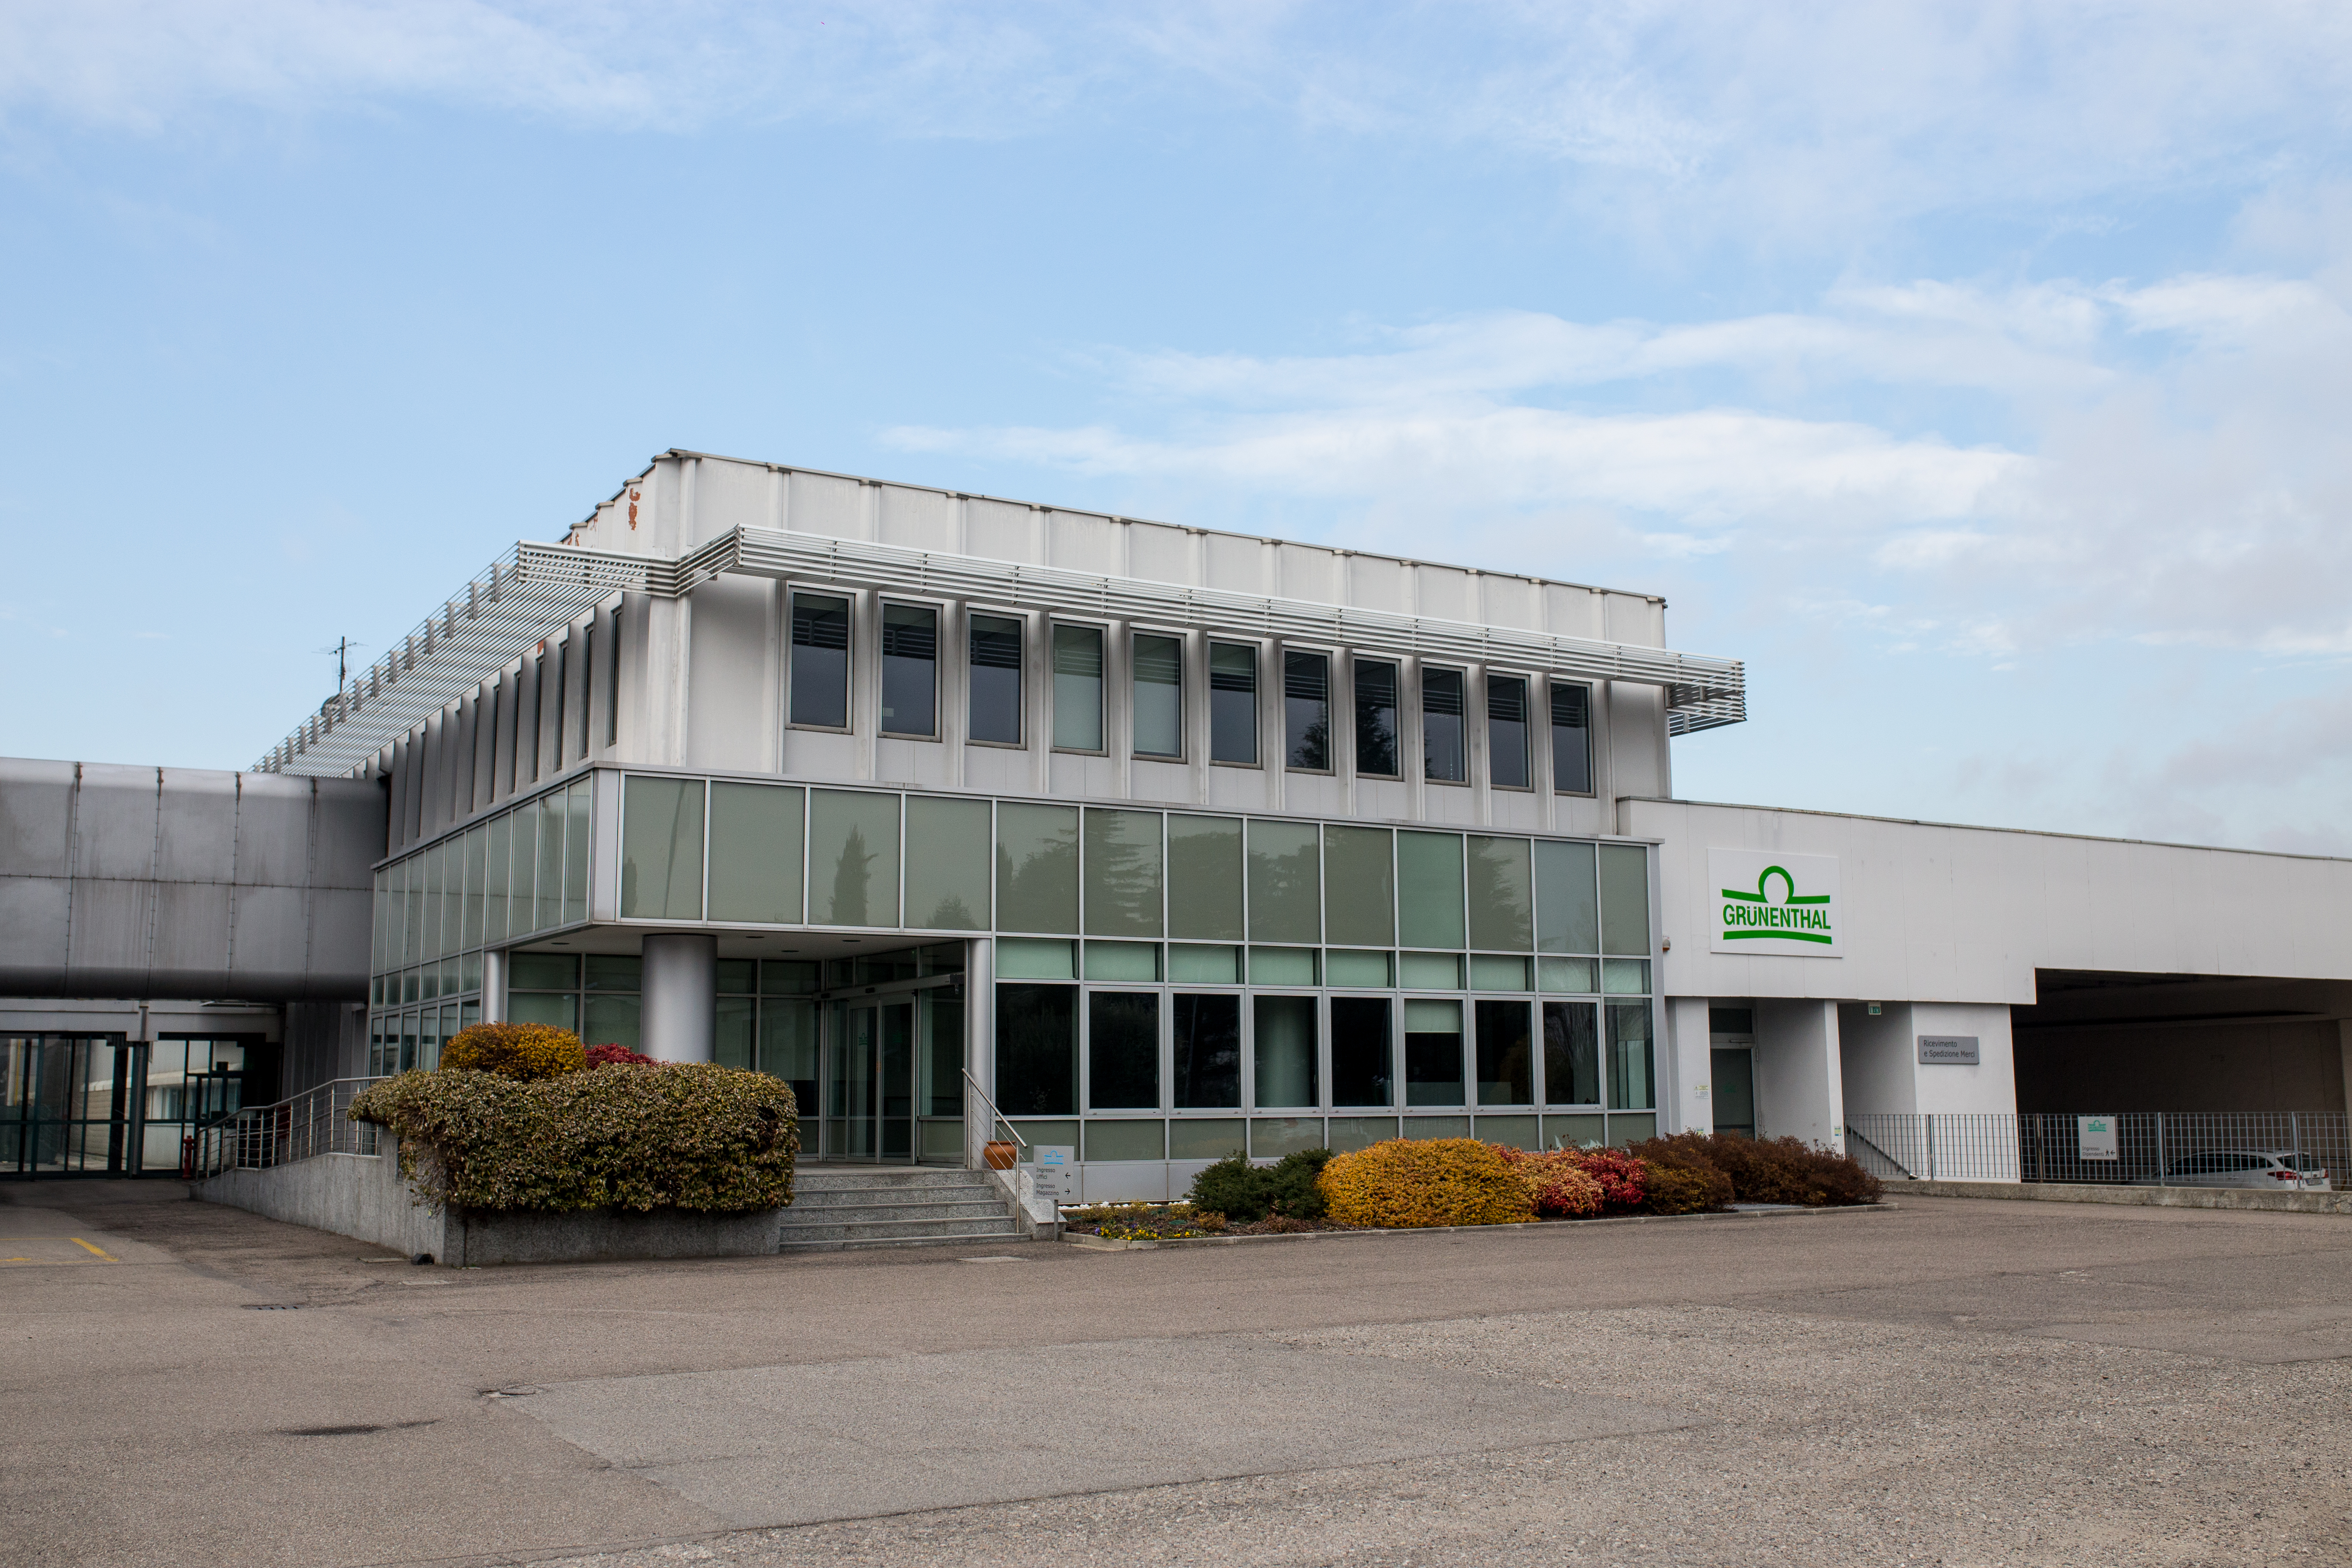 Foto dello stabilimento produttivo Farmaceutici Formenti, del Gruppo Grünenthal, ad Origgio (Varese)